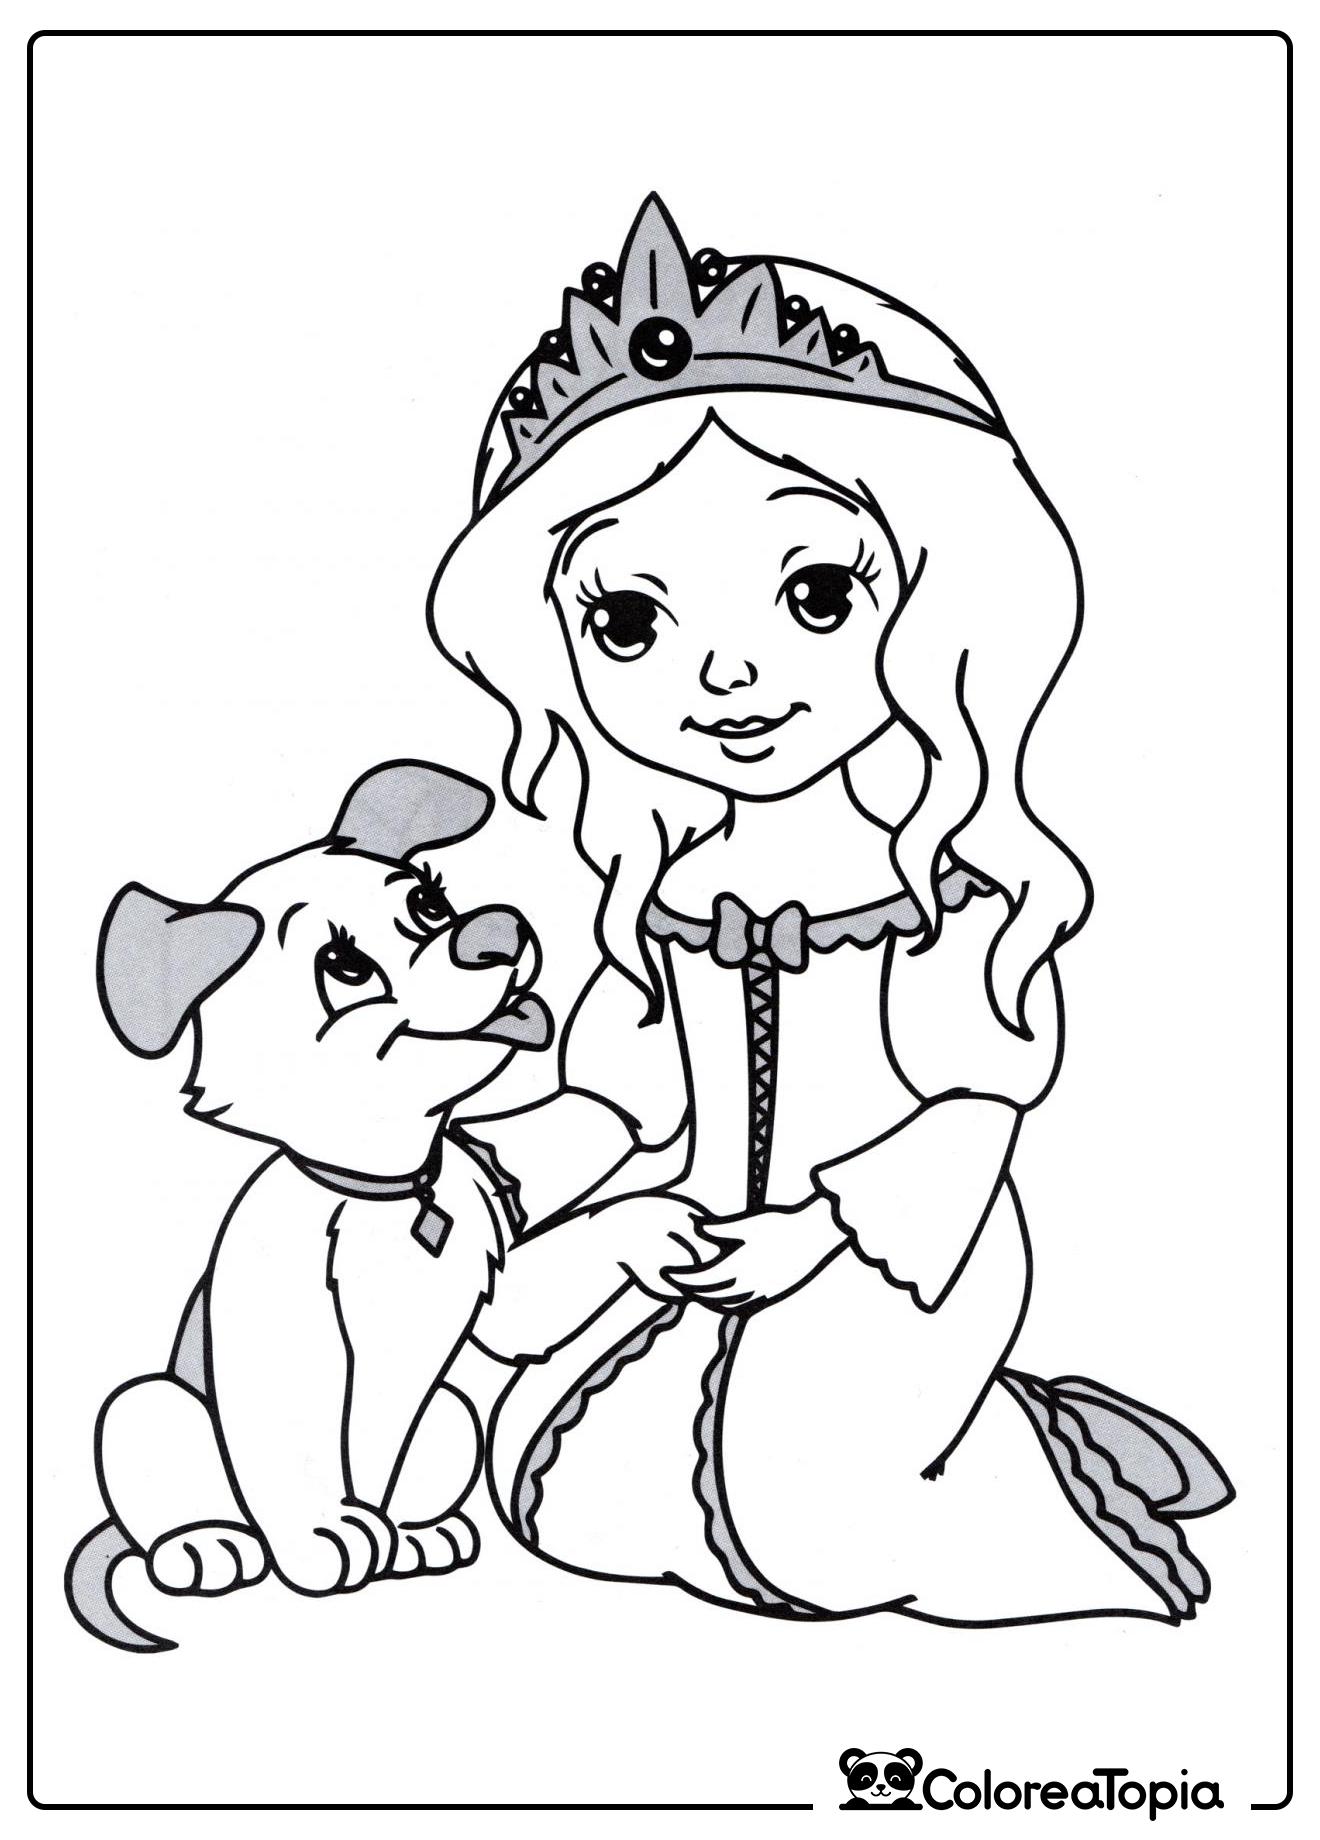 Princesa y su cachorro - dibujo para colorear